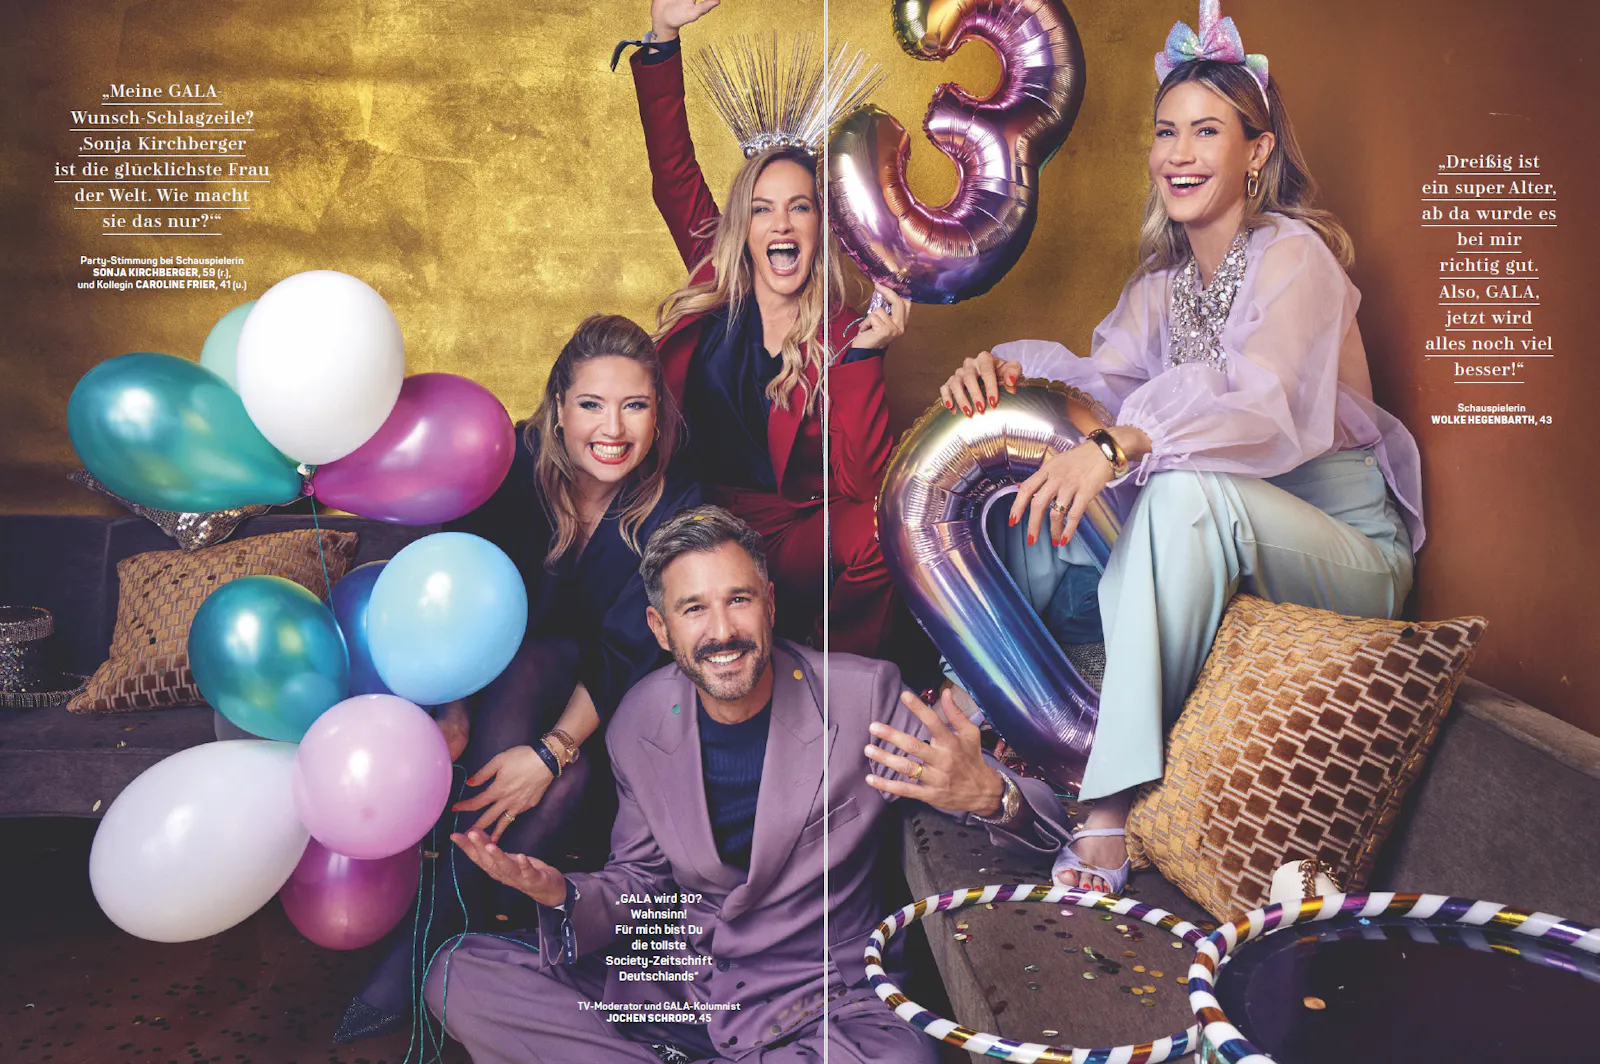 Doppelseite in der „Gala“: Sonja Kirchberger, Caroline Frier, Jochen Schropp und Wolke Hegenbarth gratulieren „Gala“ mit Luftballons.